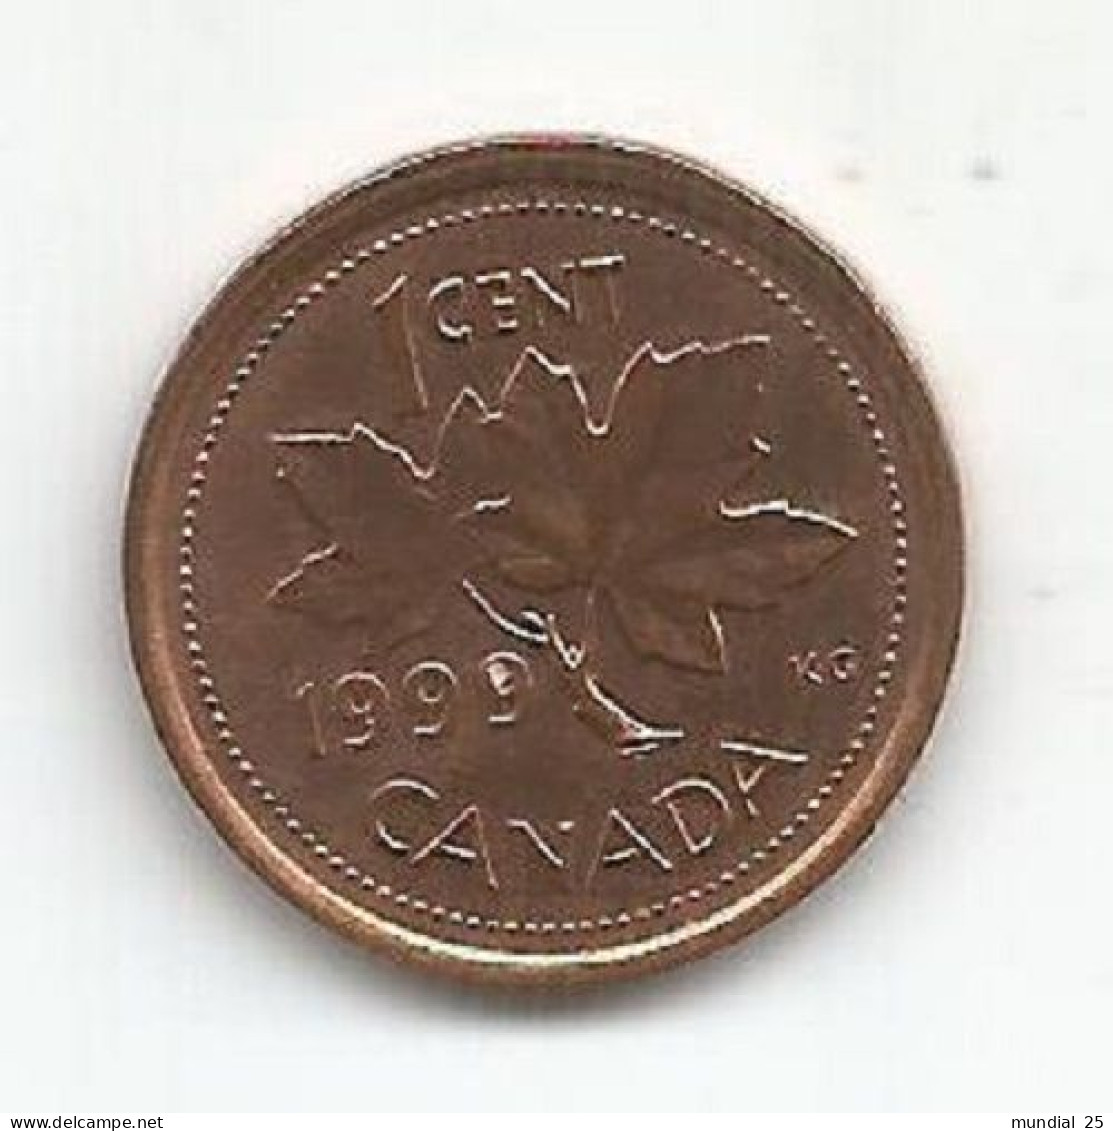 CANADA 1 CENT 1999 - Canada